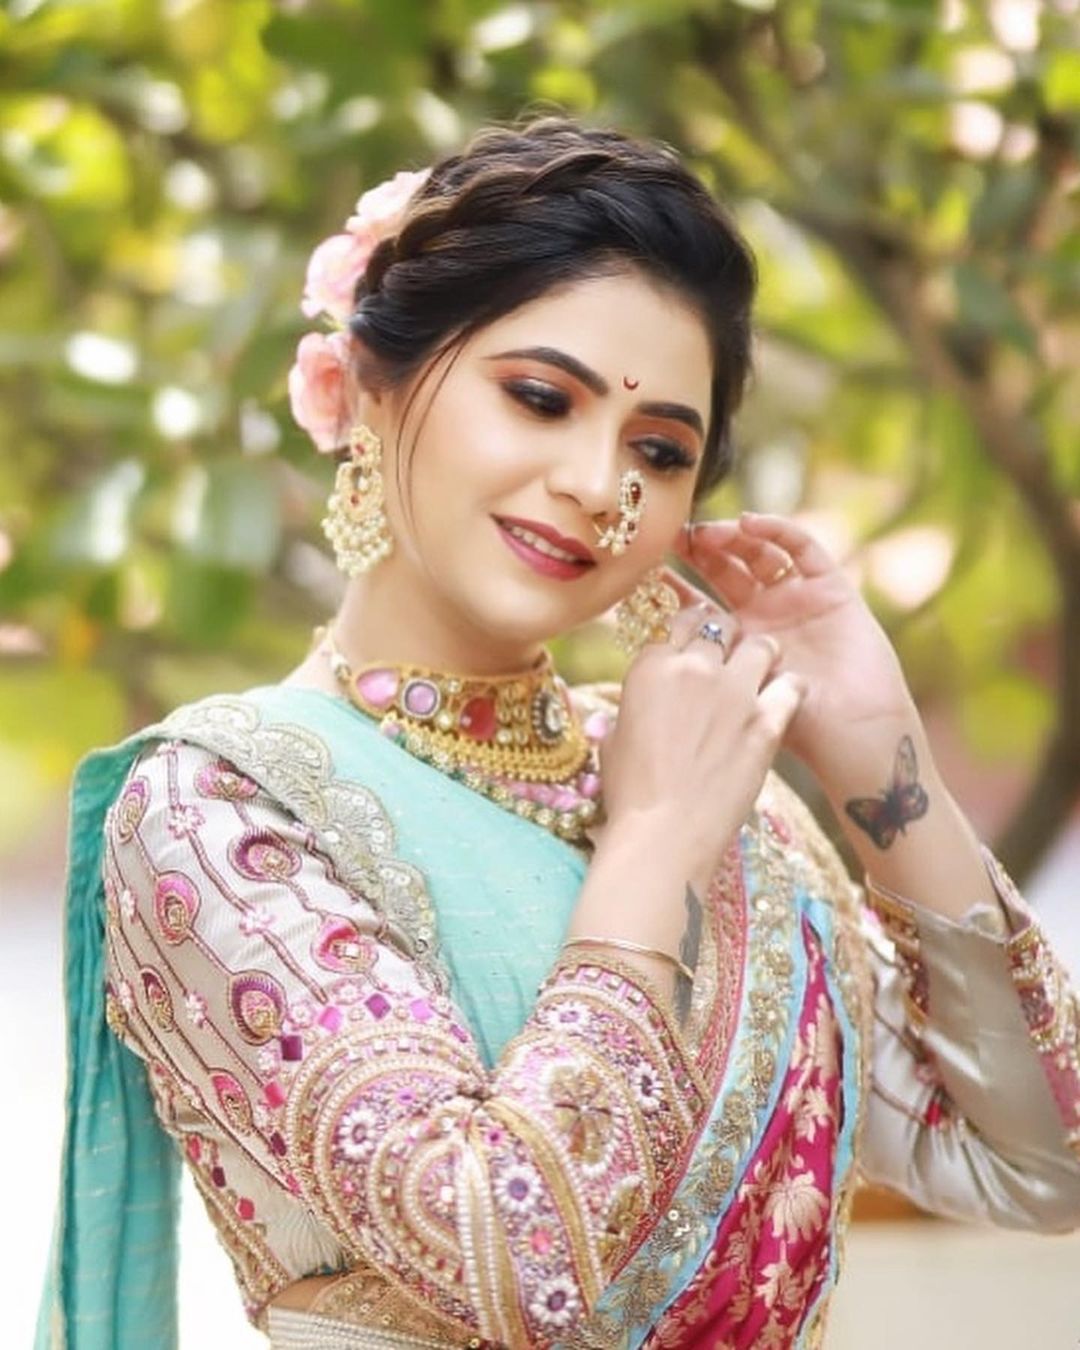 Maharashtrian Traditional Bridal Makeup/Nauvari Saree Look/Makeup Artist  Amit Mehrani #marathibride - YouTube